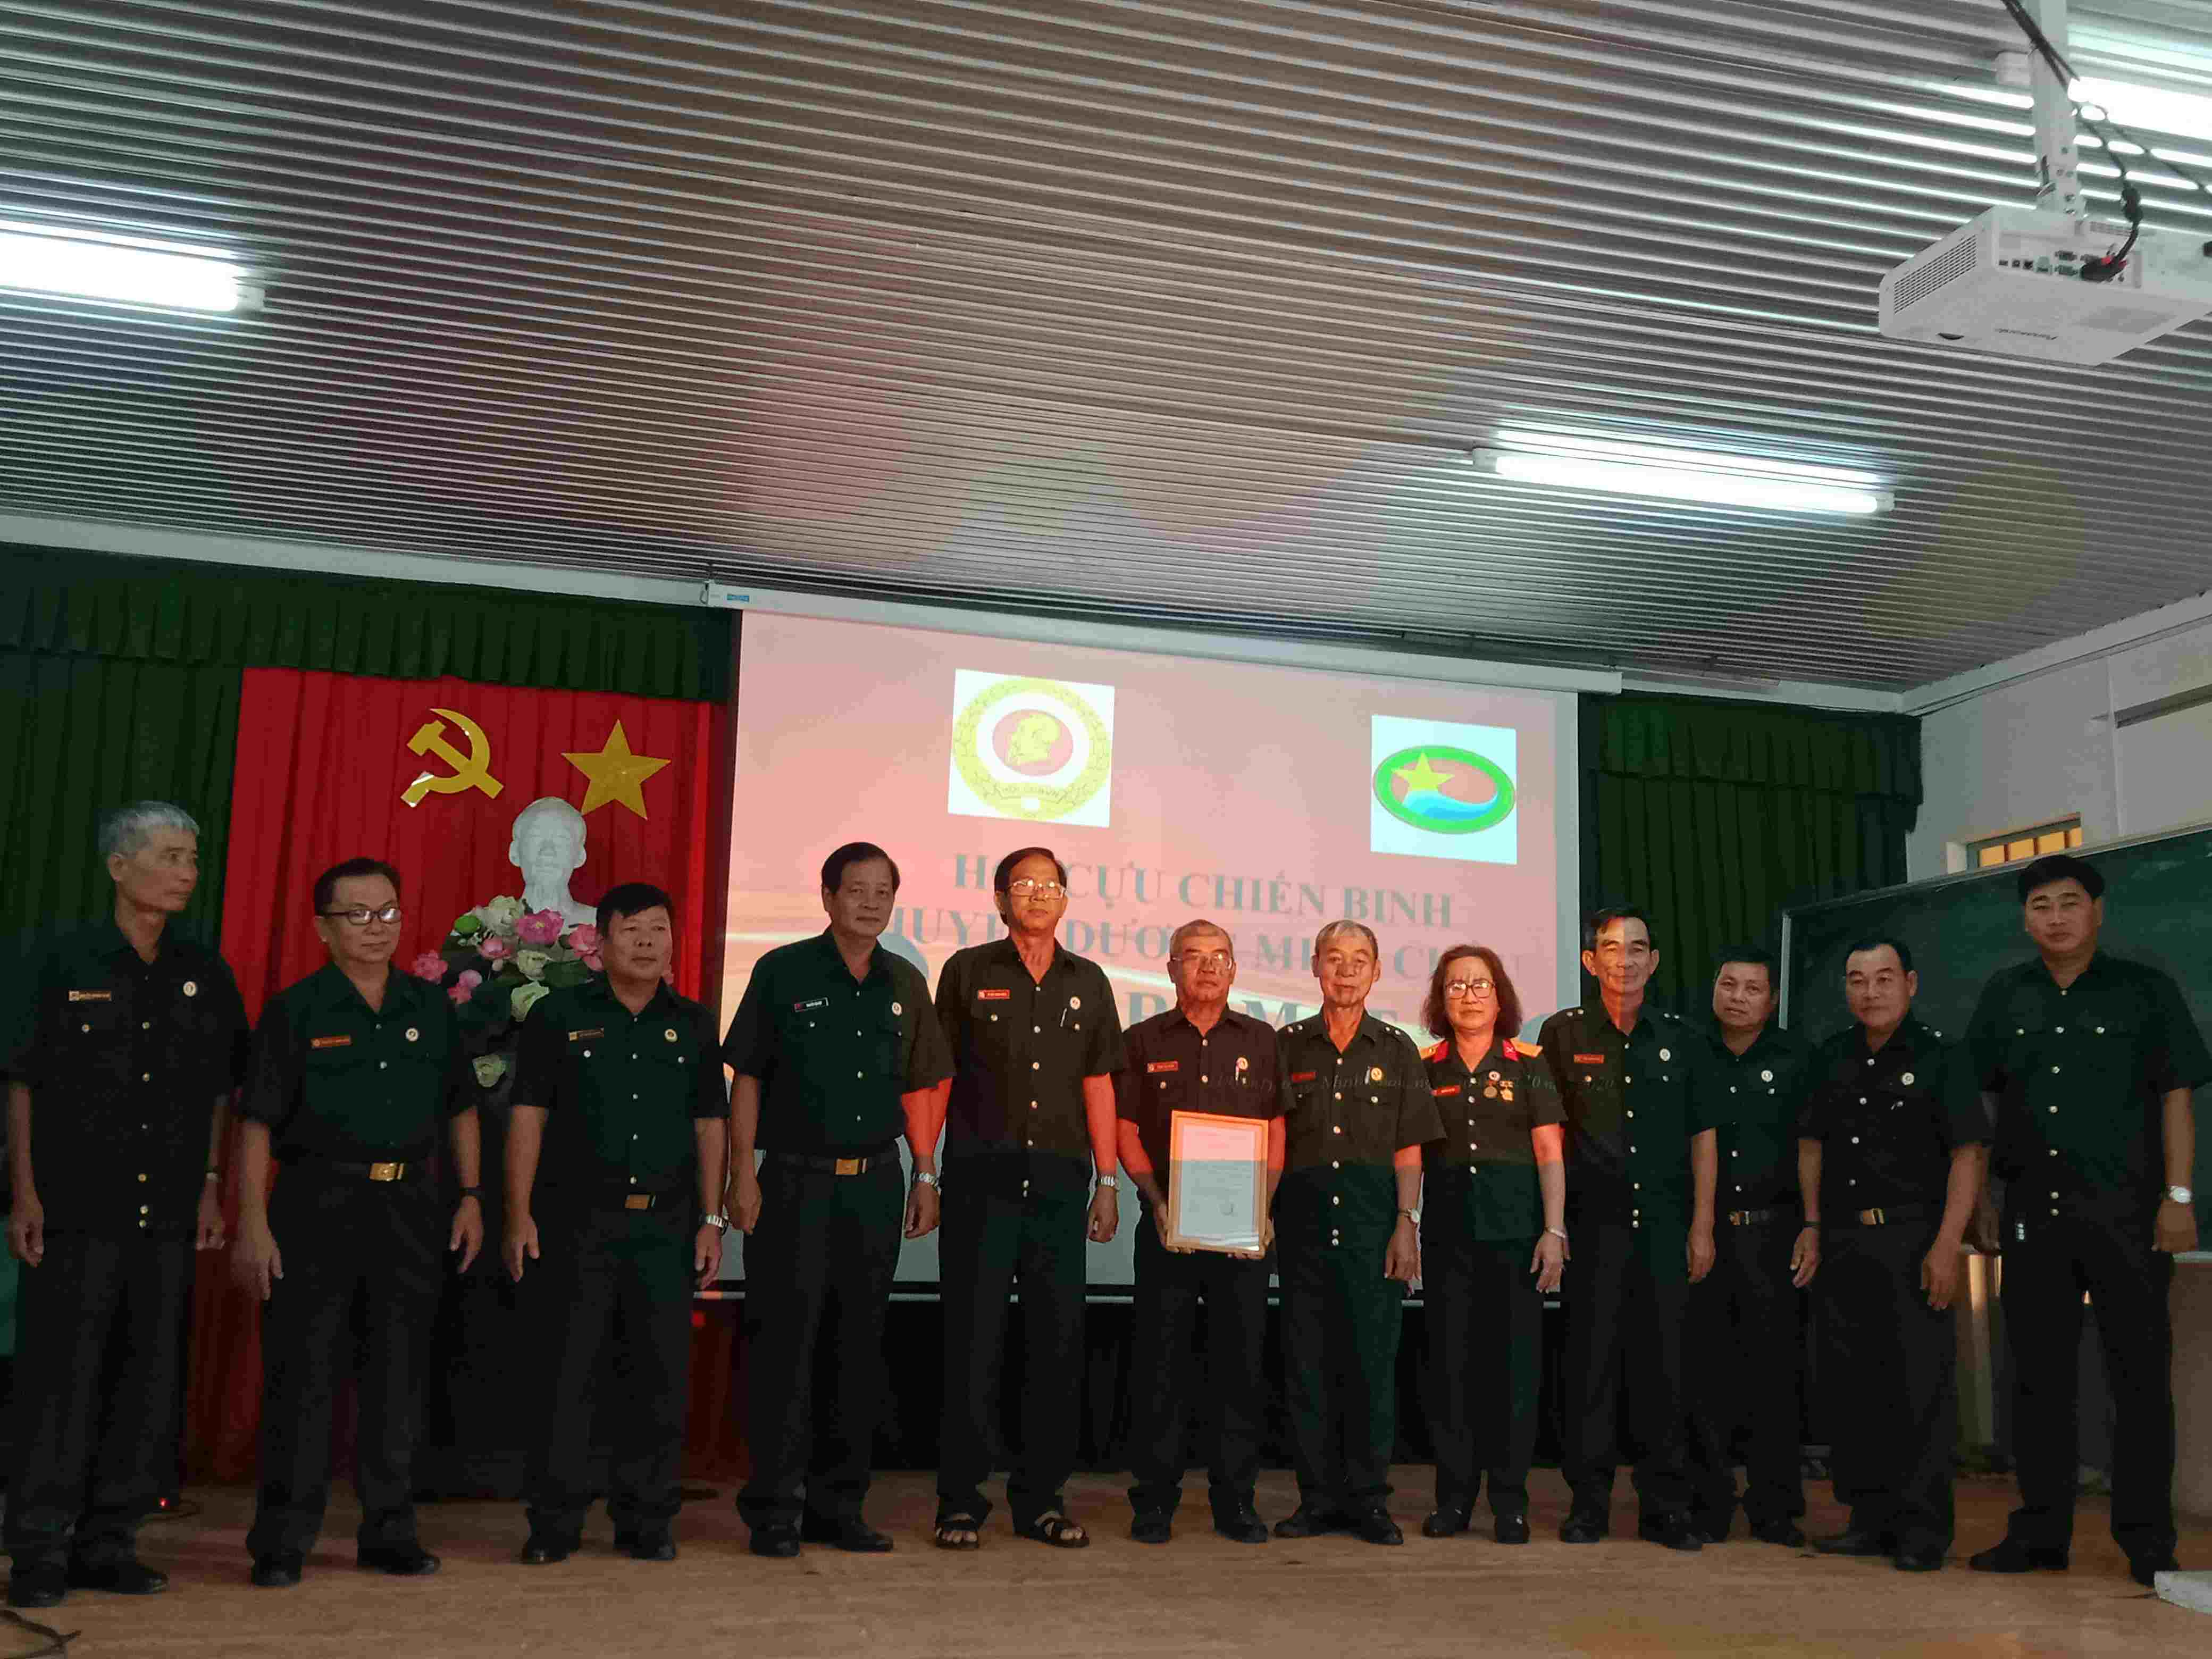 Dương Minh Châu: Ra mắt Câu lạc bộ Cựu chiến binh – Cựu quân nhân làm kinh tế